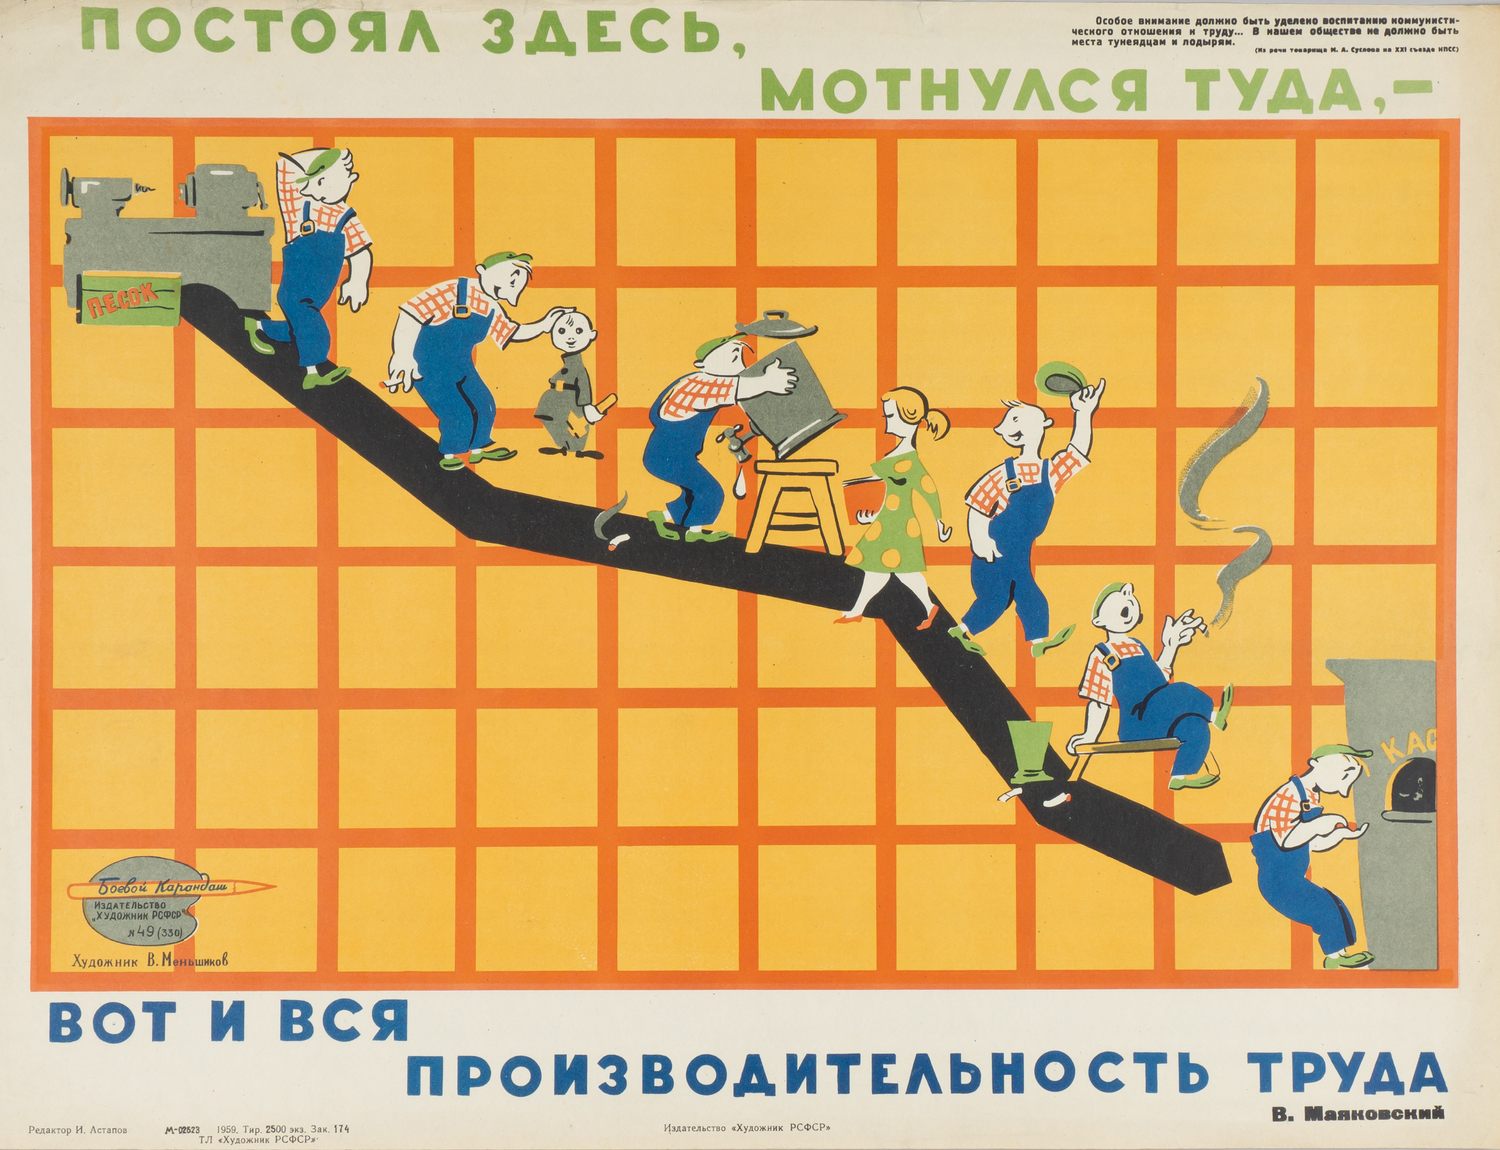 («Боевой карандаш») Меньшиков В.М. Плакат «Постоял здесь, мотнулся туда…» (Л., 1959).